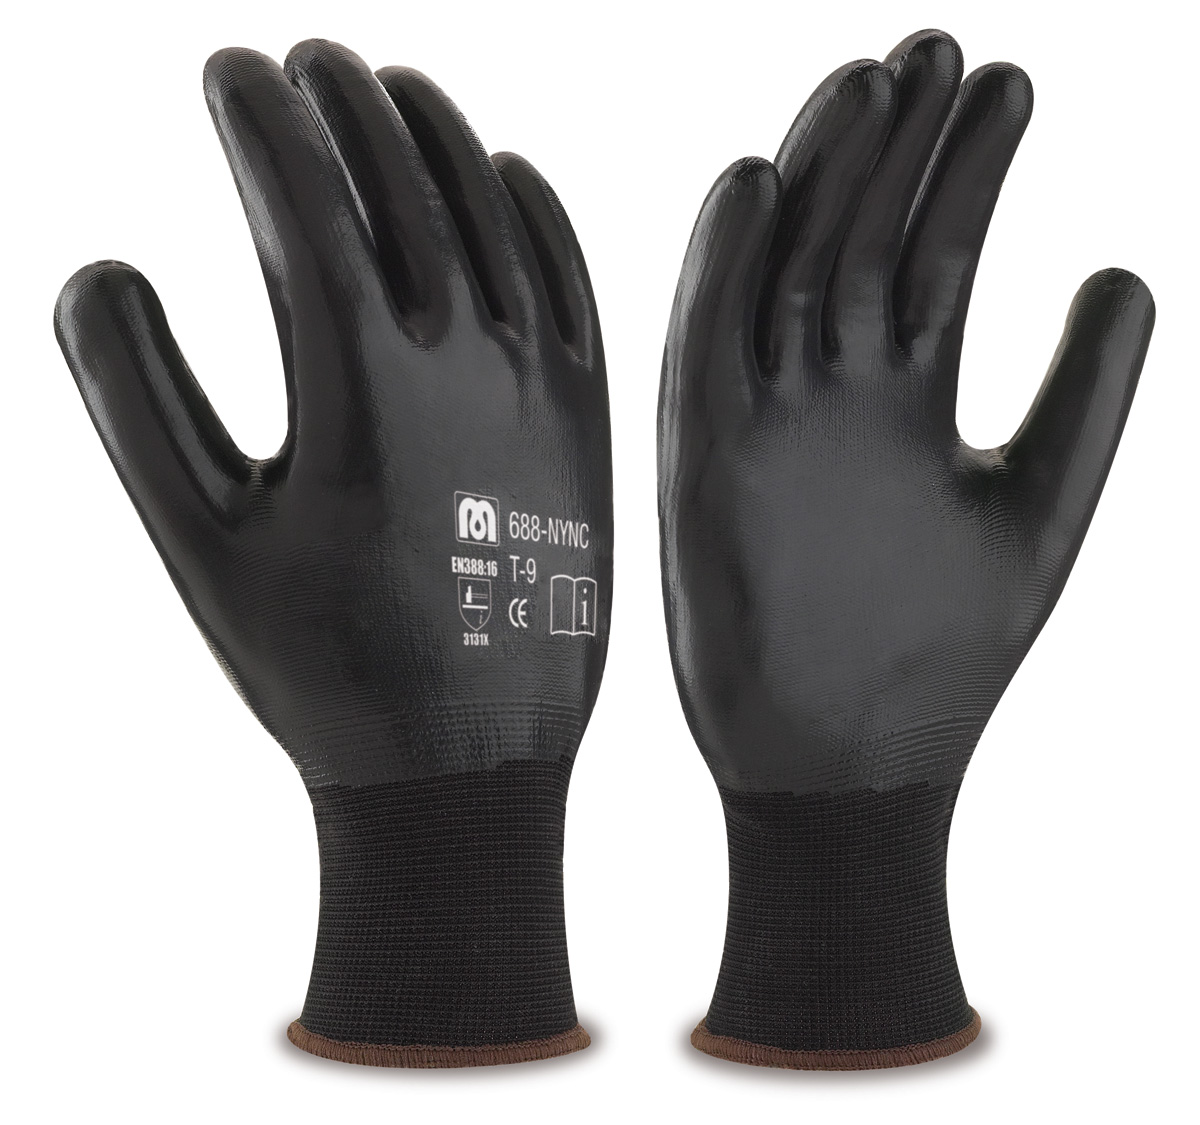 688-NYNC Gants de Travail Nylon Gant polyester noir avec revêtement en nitrile noir sur la paume, les doigts et le dos